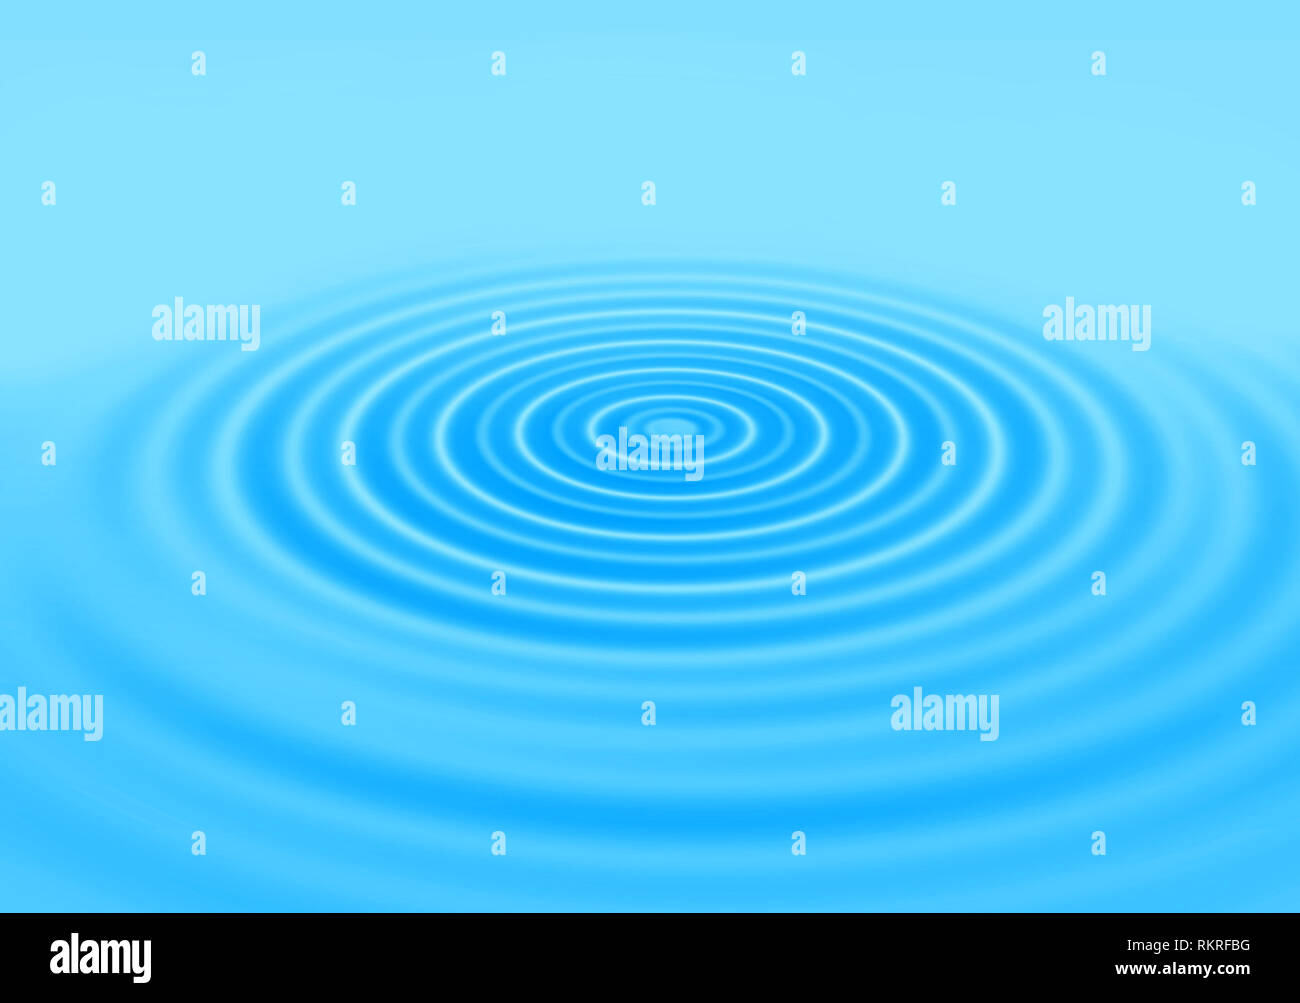 Blauen Gradienten abstrakt Hintergrund mit Ringen auf einer Wasseroberfläche Stockfoto